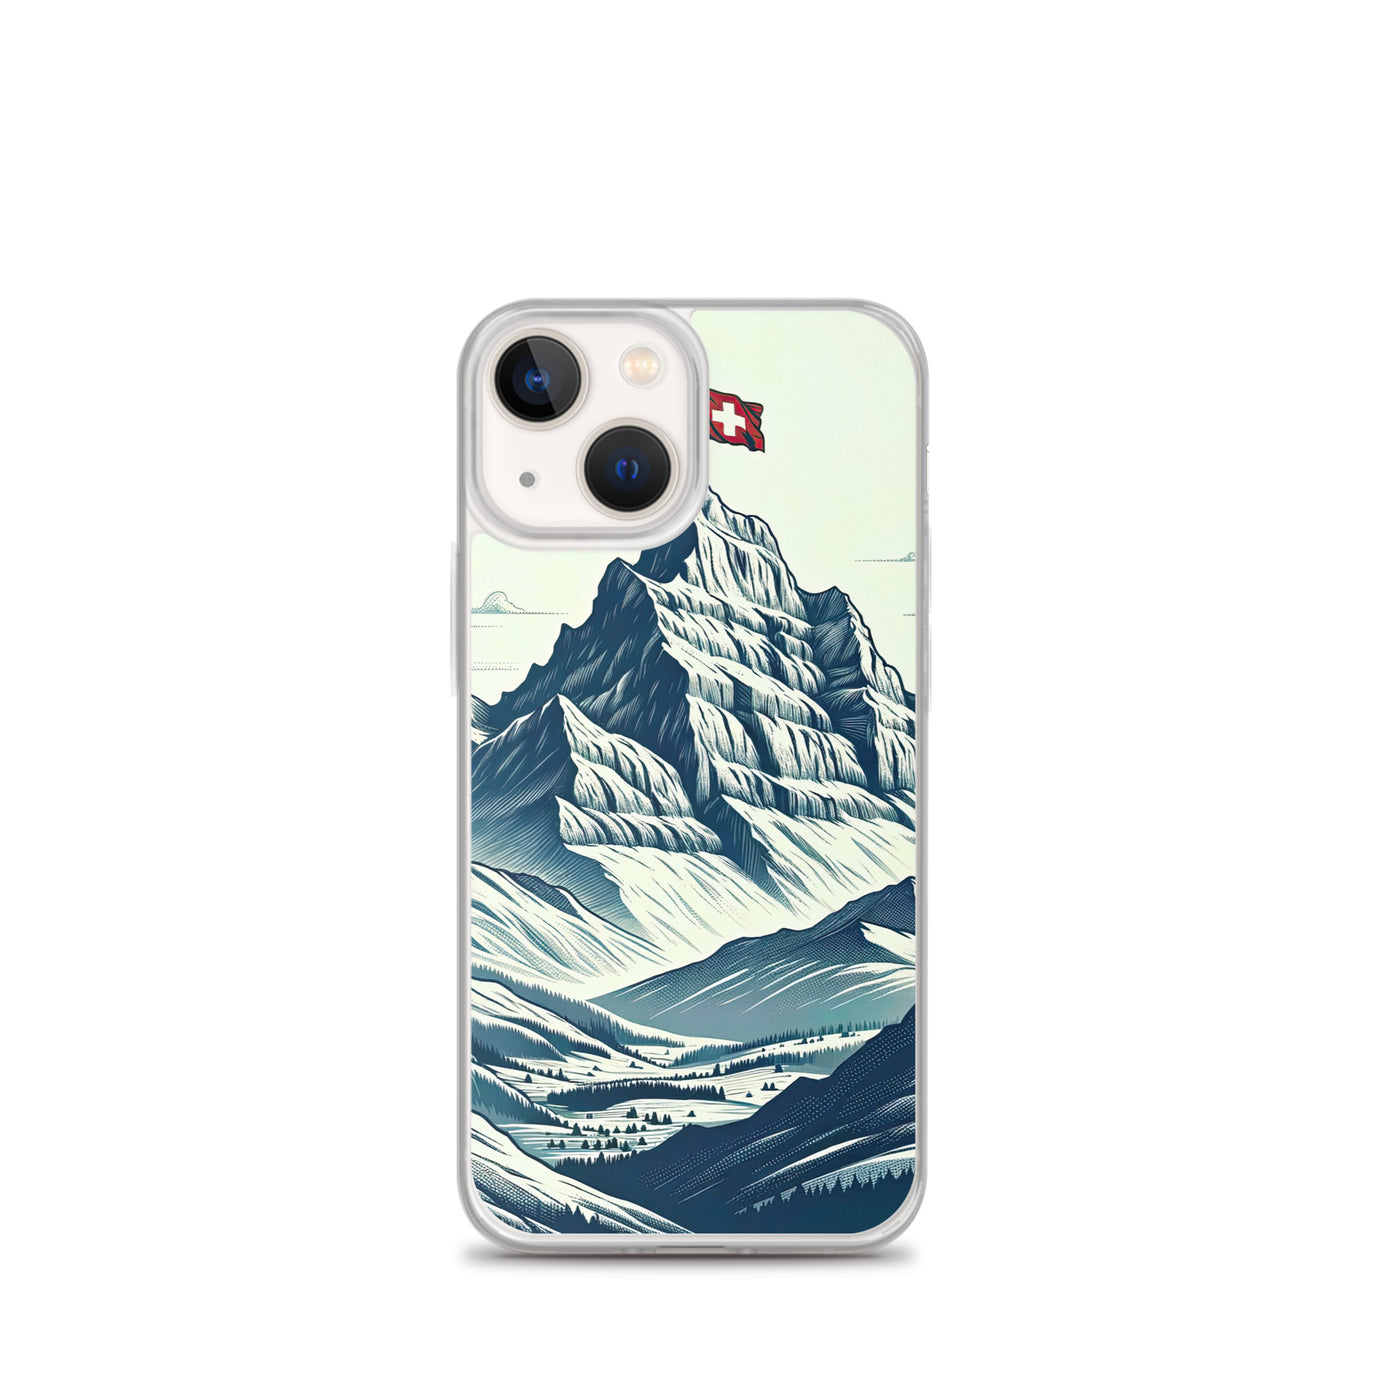 Ausgedehnte Bergkette mit dominierendem Gipfel und wehender Schweizer Flagge - iPhone Schutzhülle (durchsichtig) berge xxx yyy zzz iPhone 13 mini